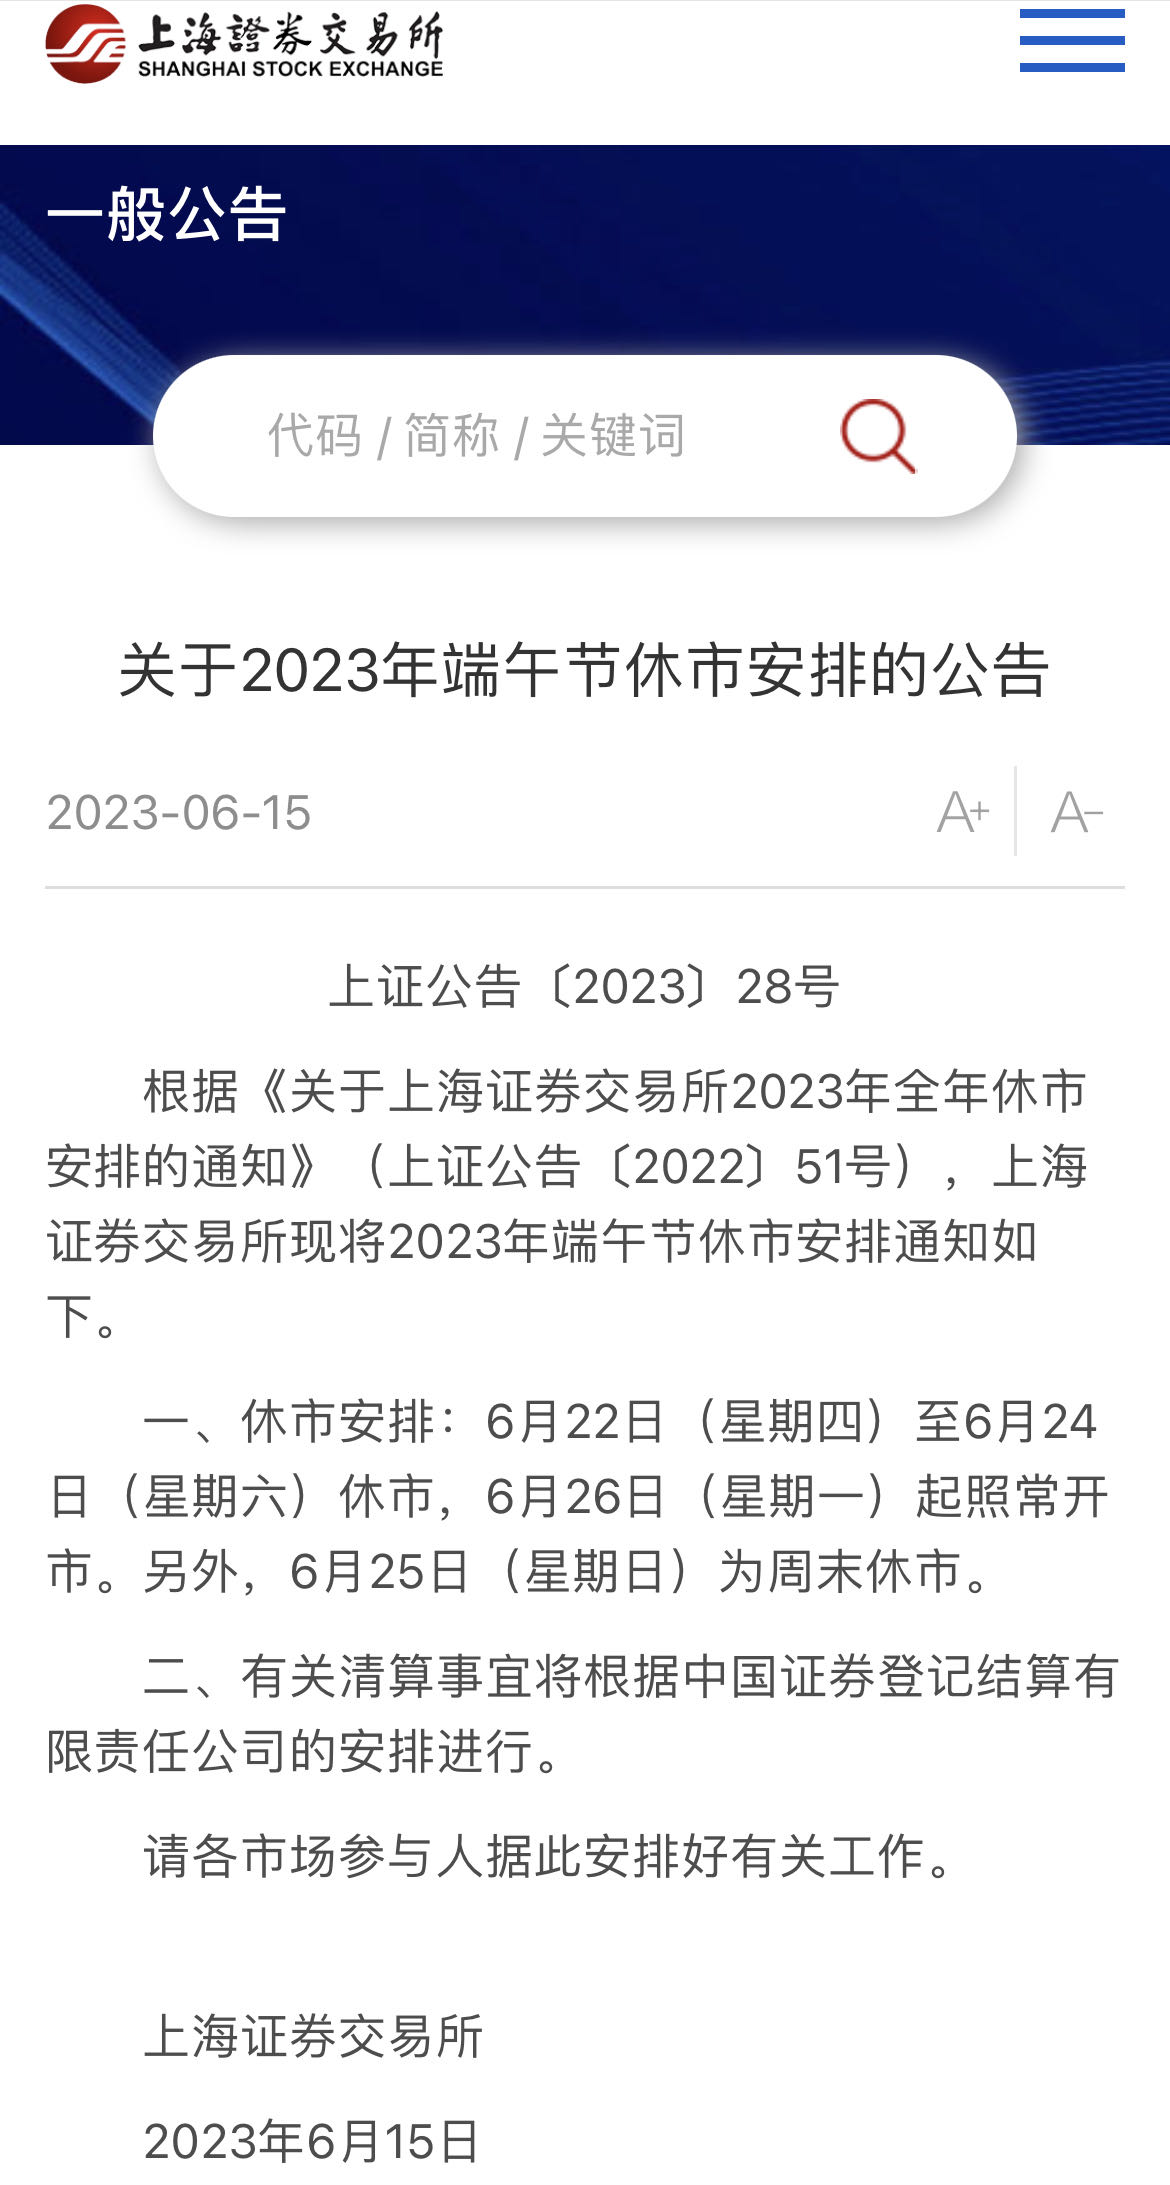 沪深交所发布2023年端午节休市安排